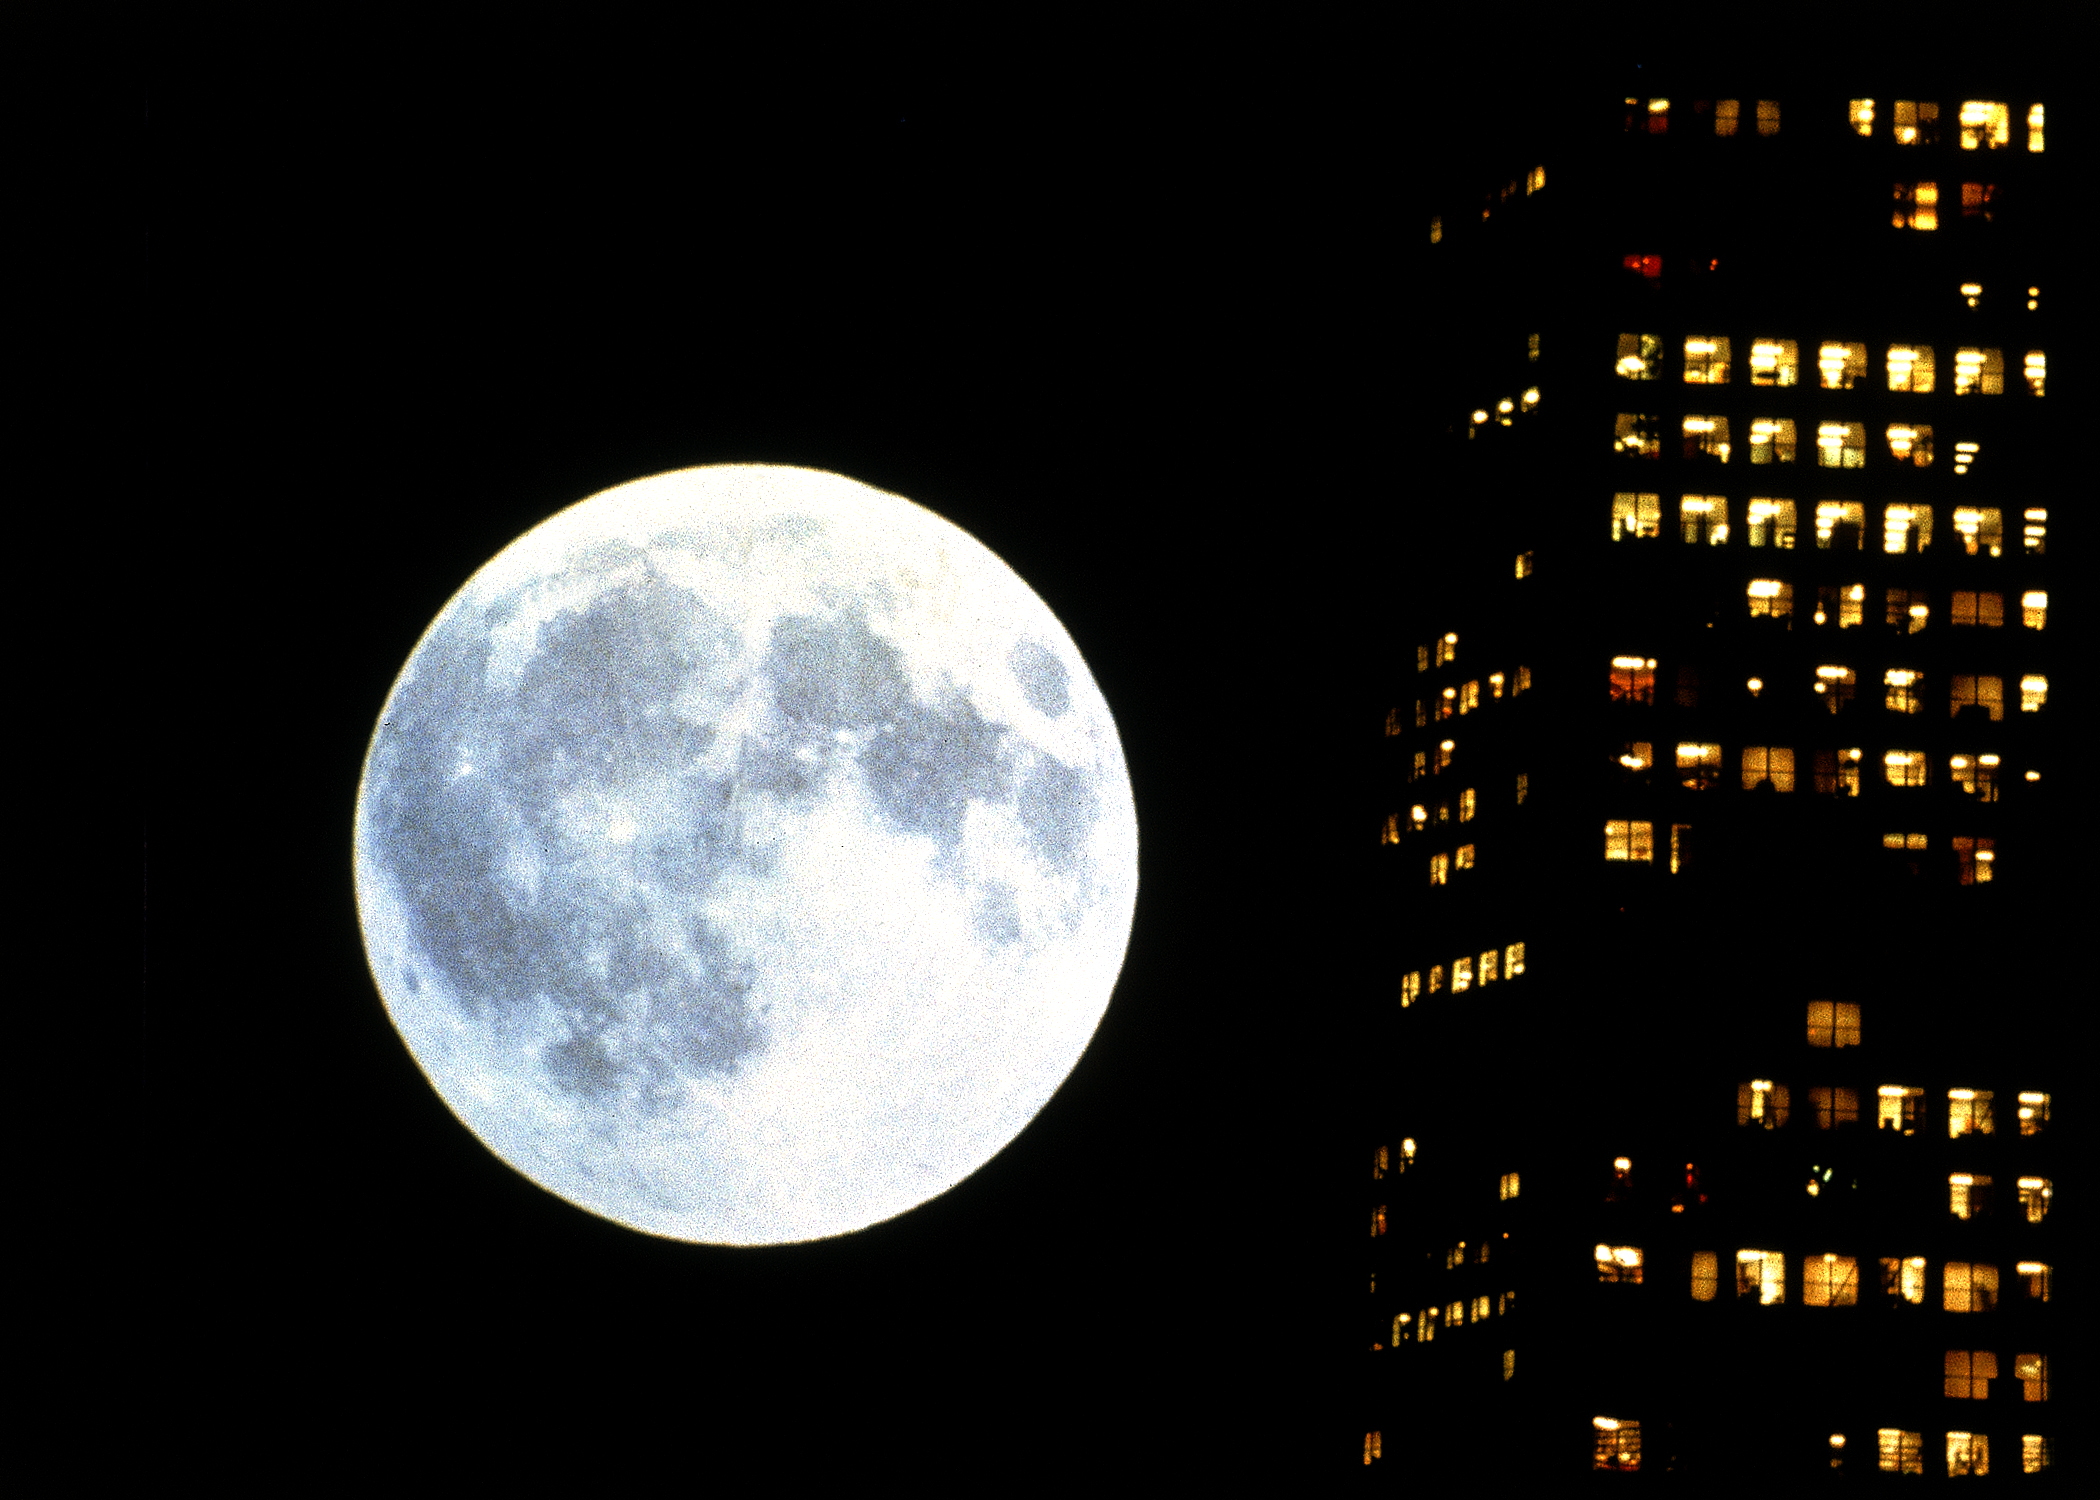 Kadr filmu “Koyaanisqatsi”, przedstawiający księżyc świecący w pełni po prawej stronie widać świecące okna wieżowca